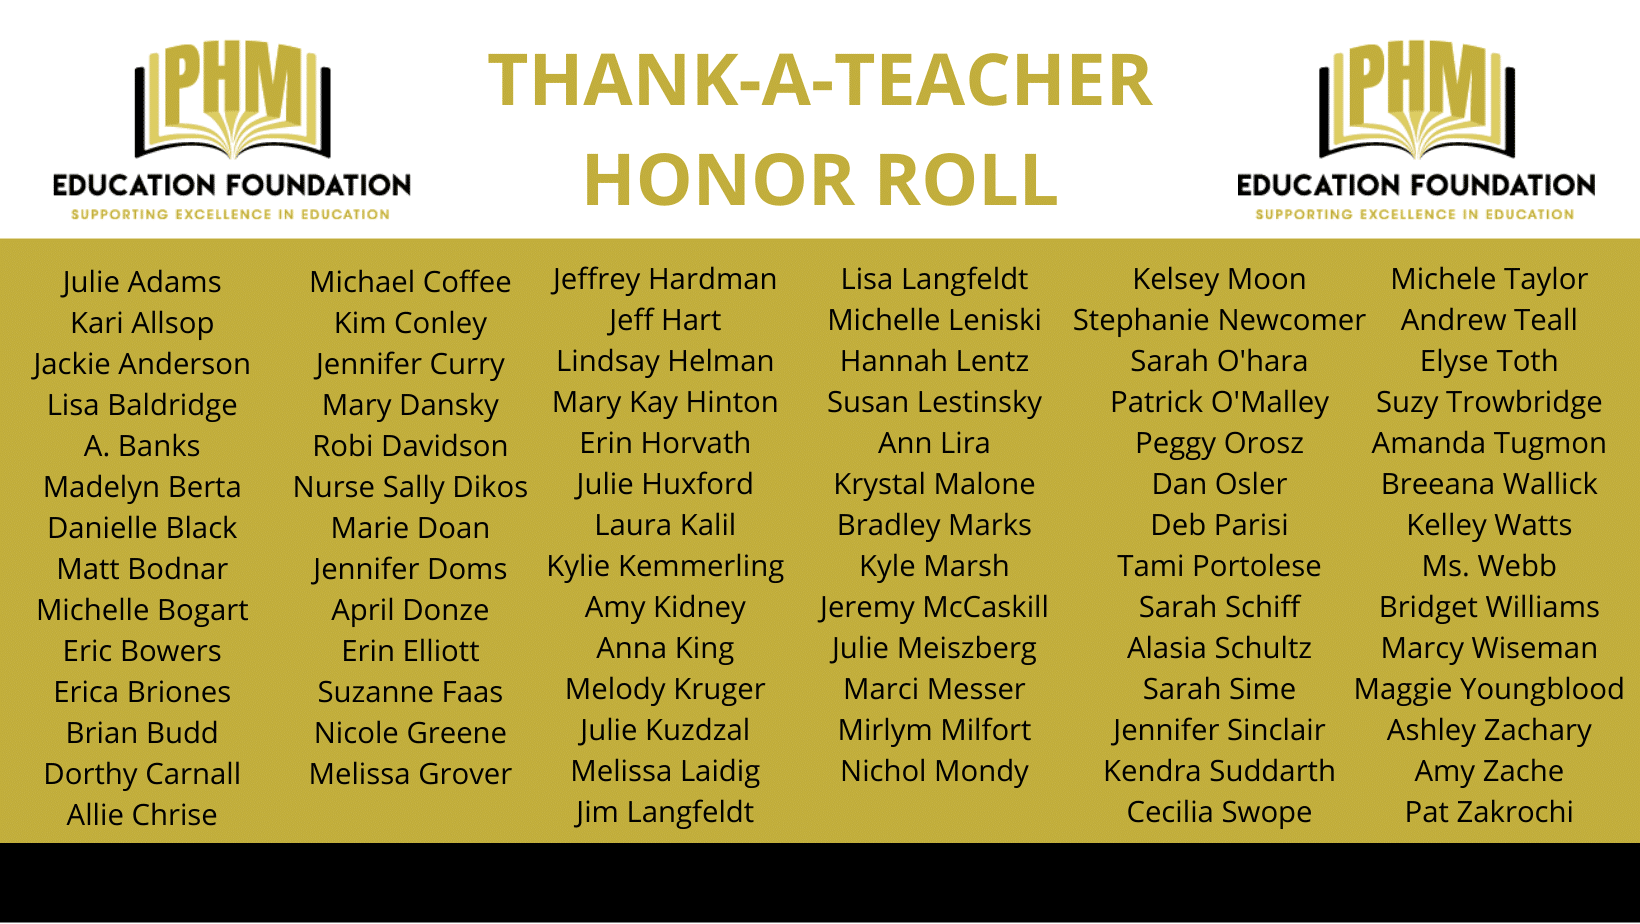 Thank-a-Teacher Honor Roll (Website) (1)